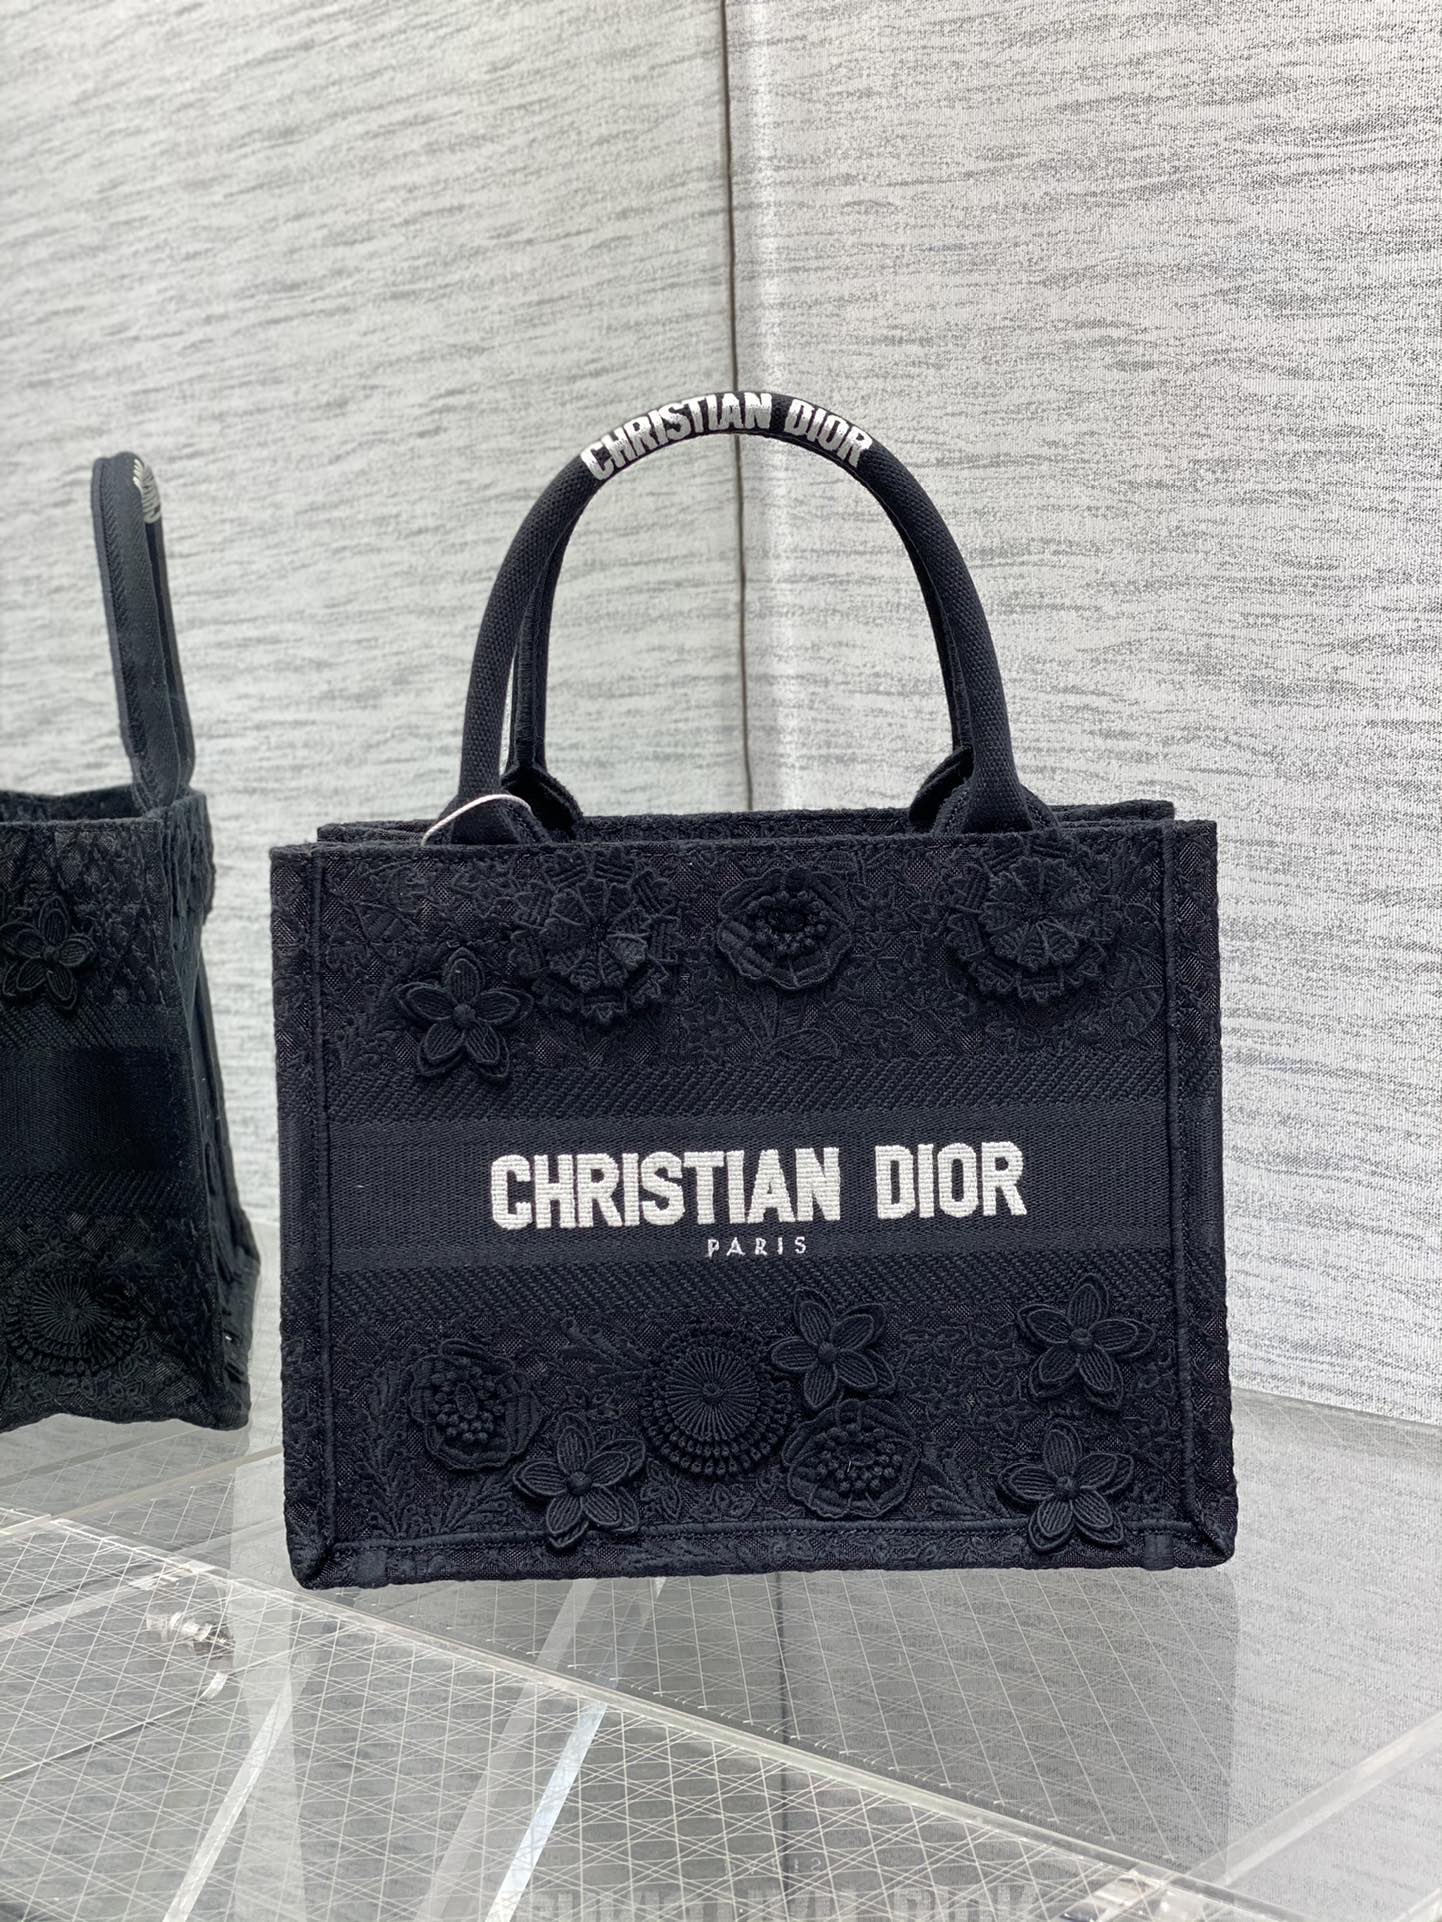 迪奥Dior顶级进口原厂绣花购物袋小号现货️Tote最新尺寸小号被种草了这个包比原本的小号短一点显得非常